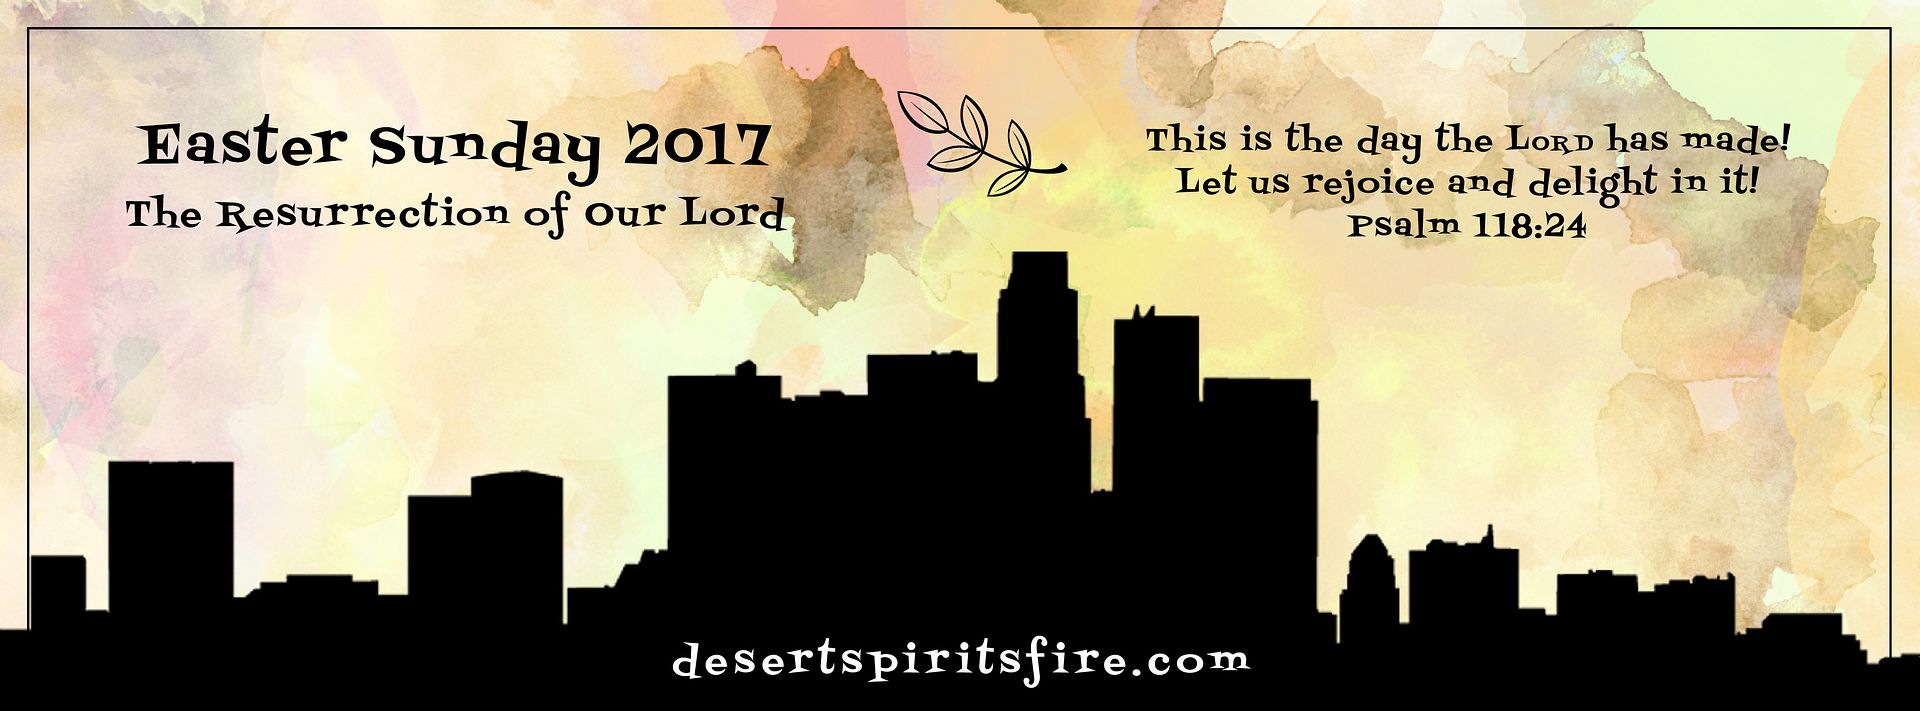 Easter Day 2015 desert spirit's fire web banner